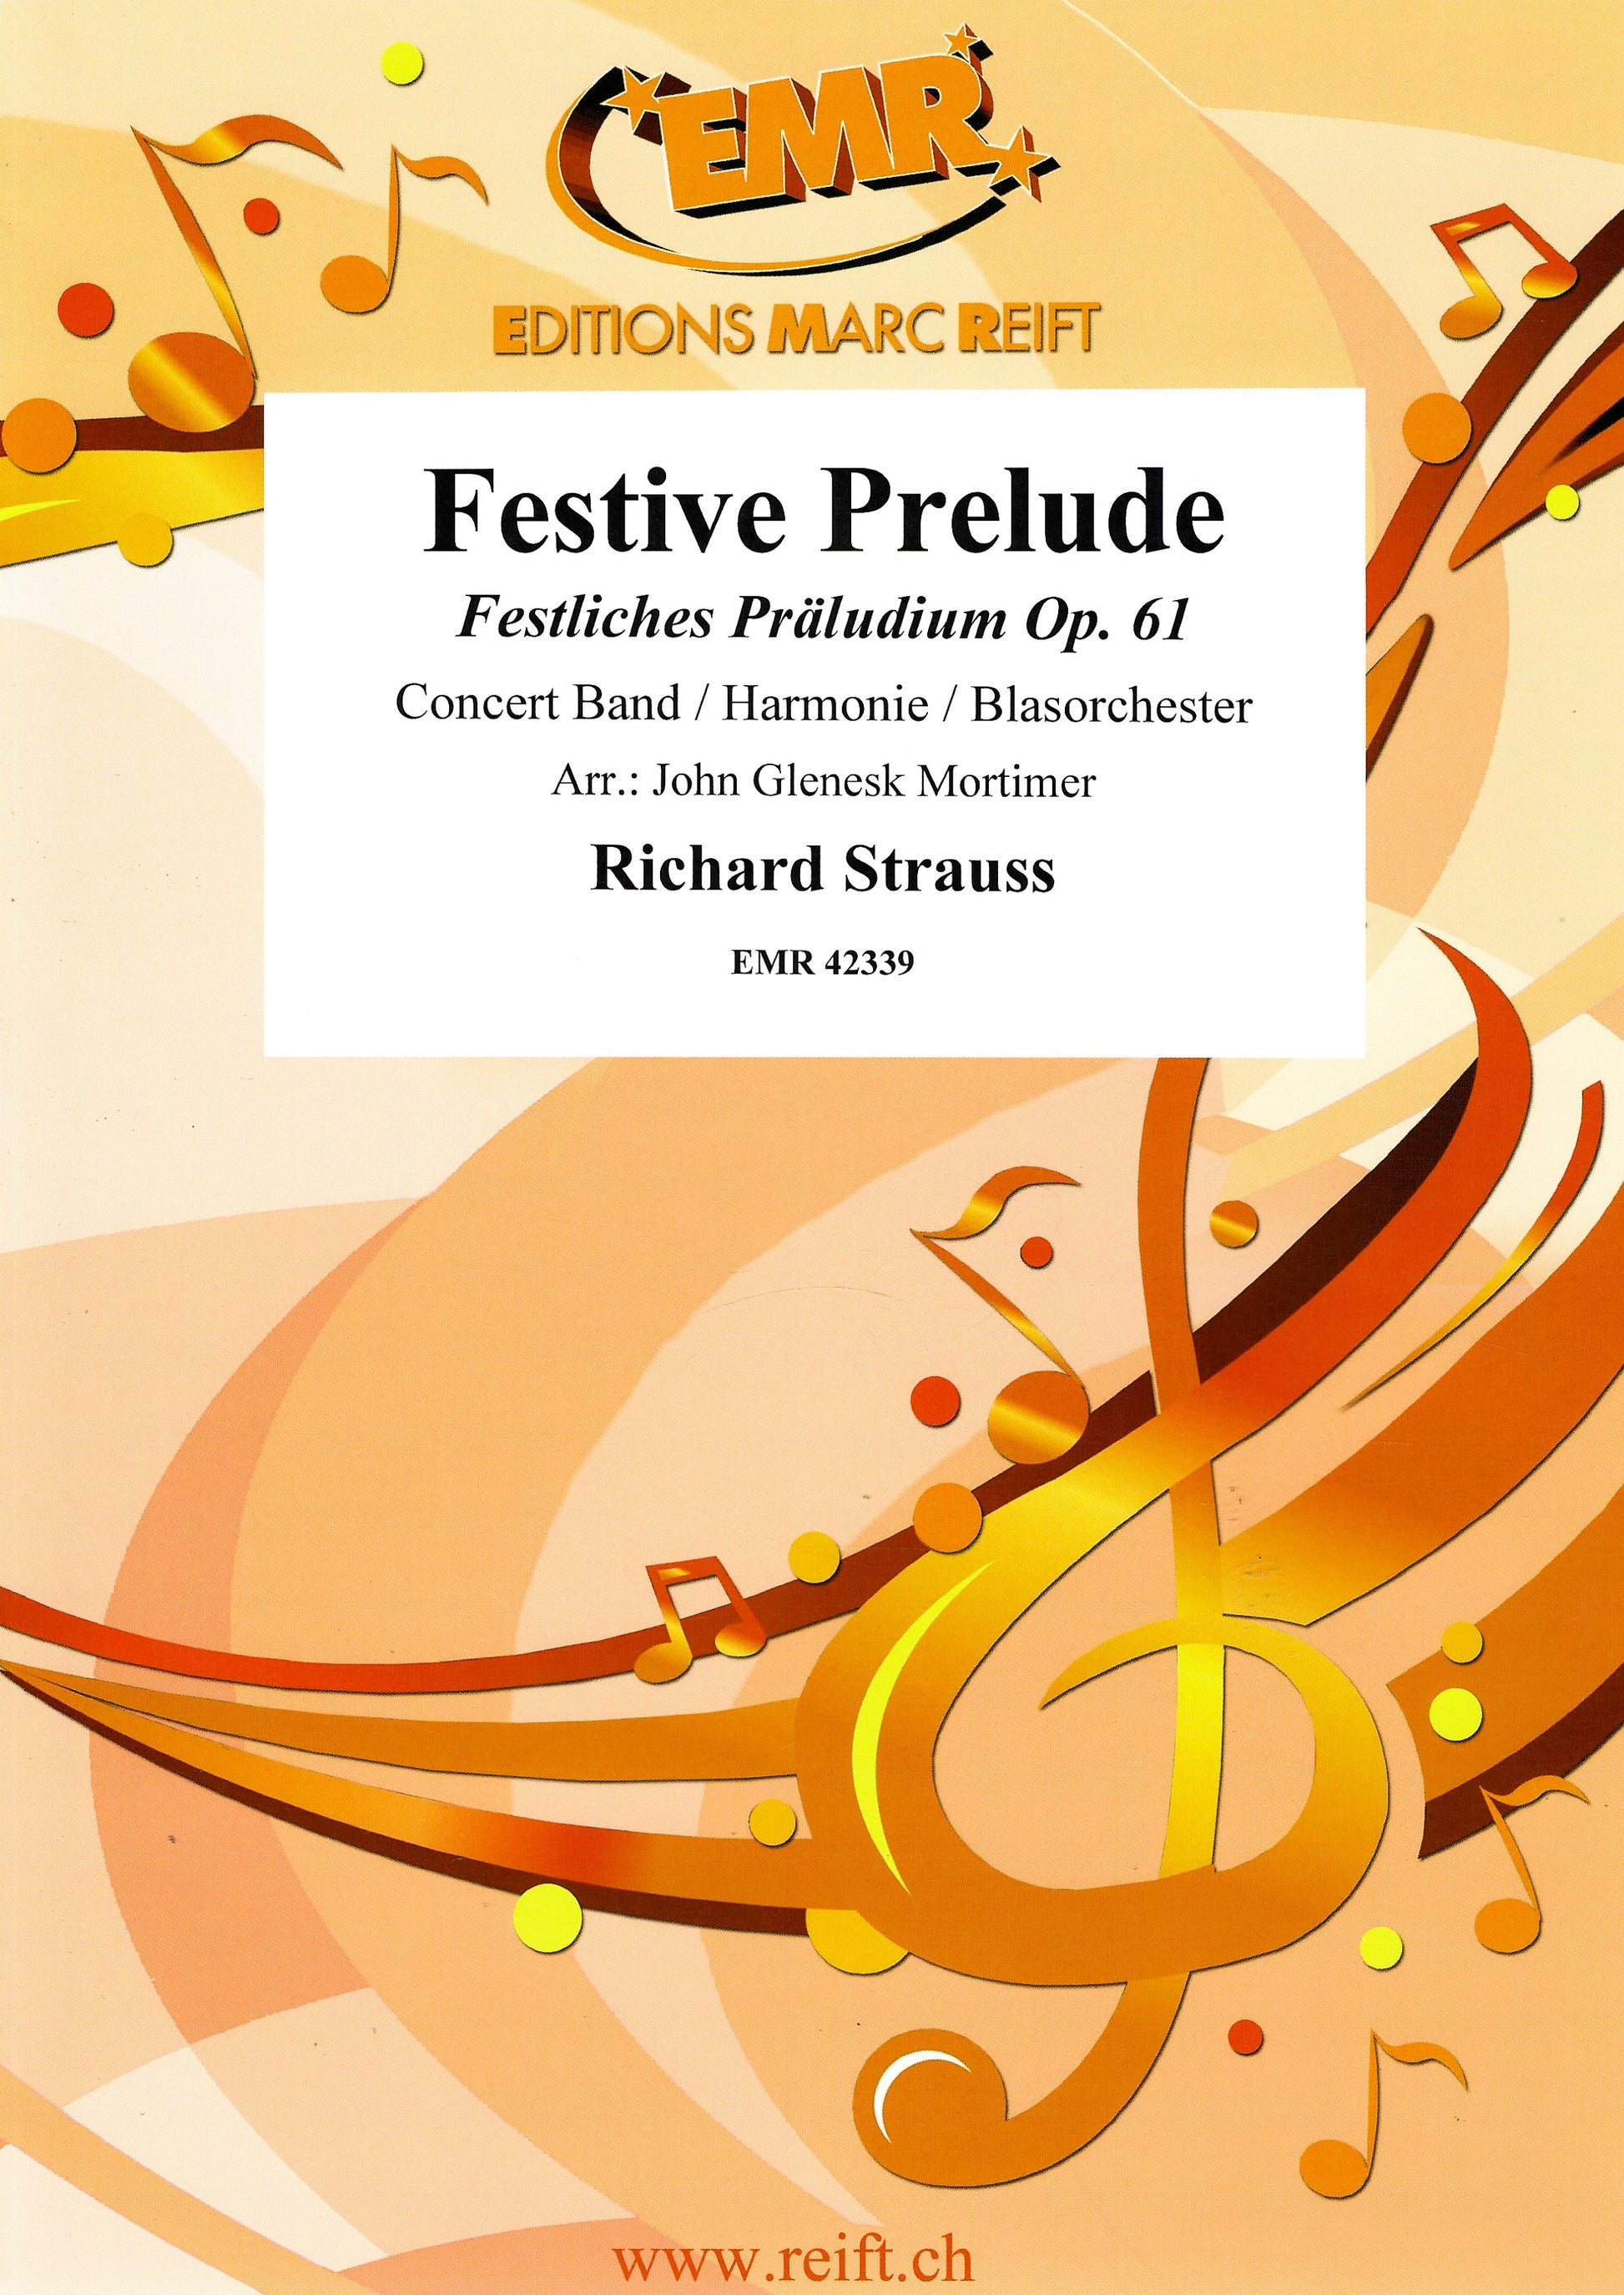 Festive Prelude